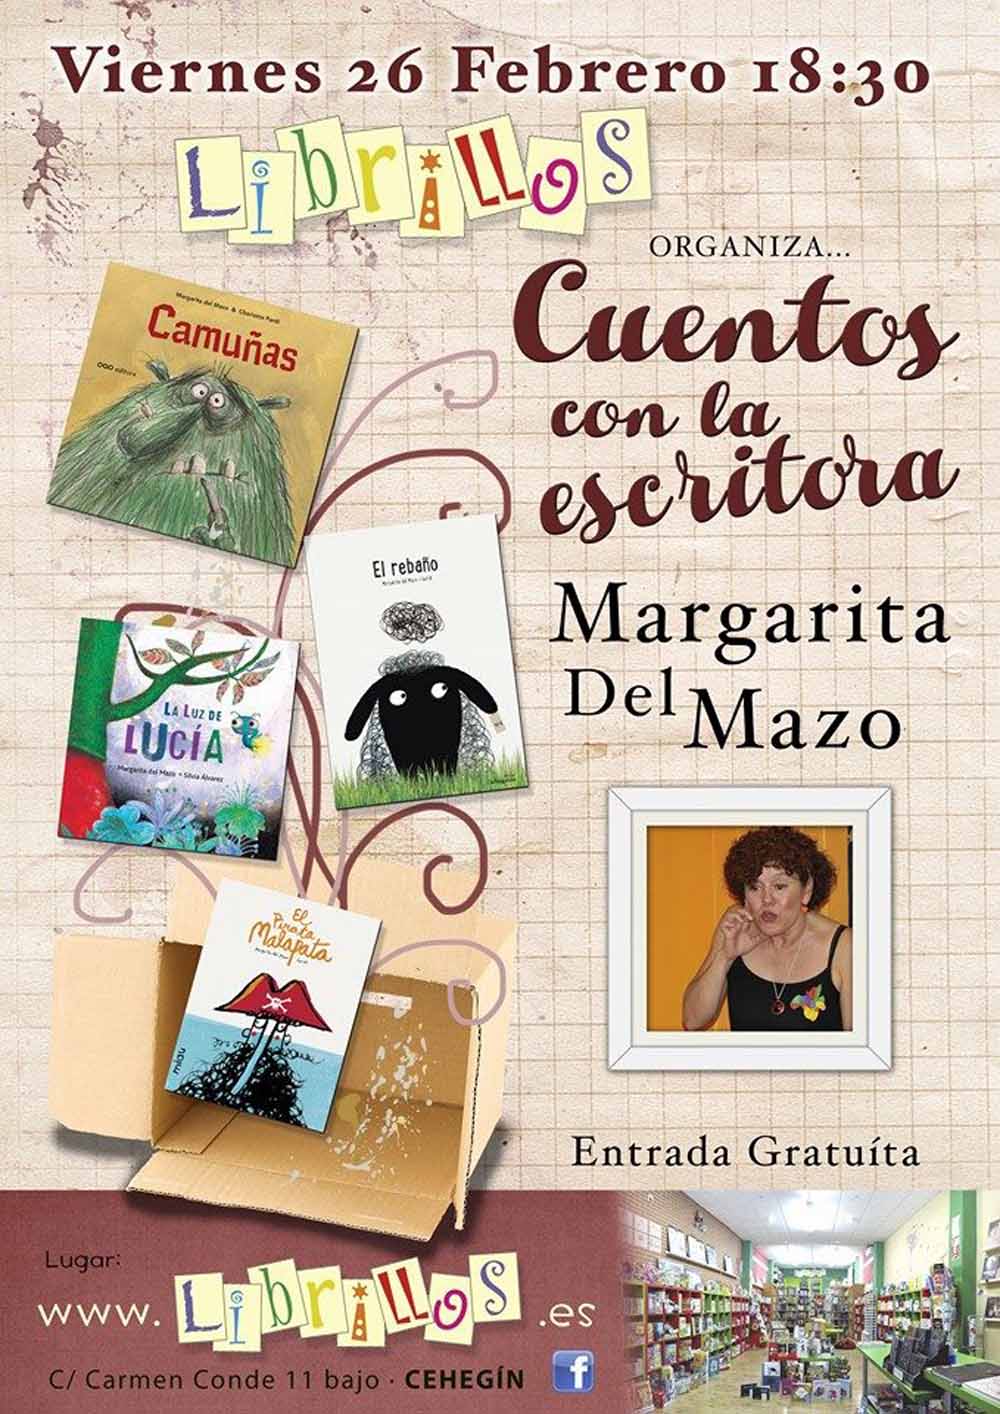 Cuentos con la escritora Margarita del Mazo el 26 de febrero en la librería de Cehegín Librillos